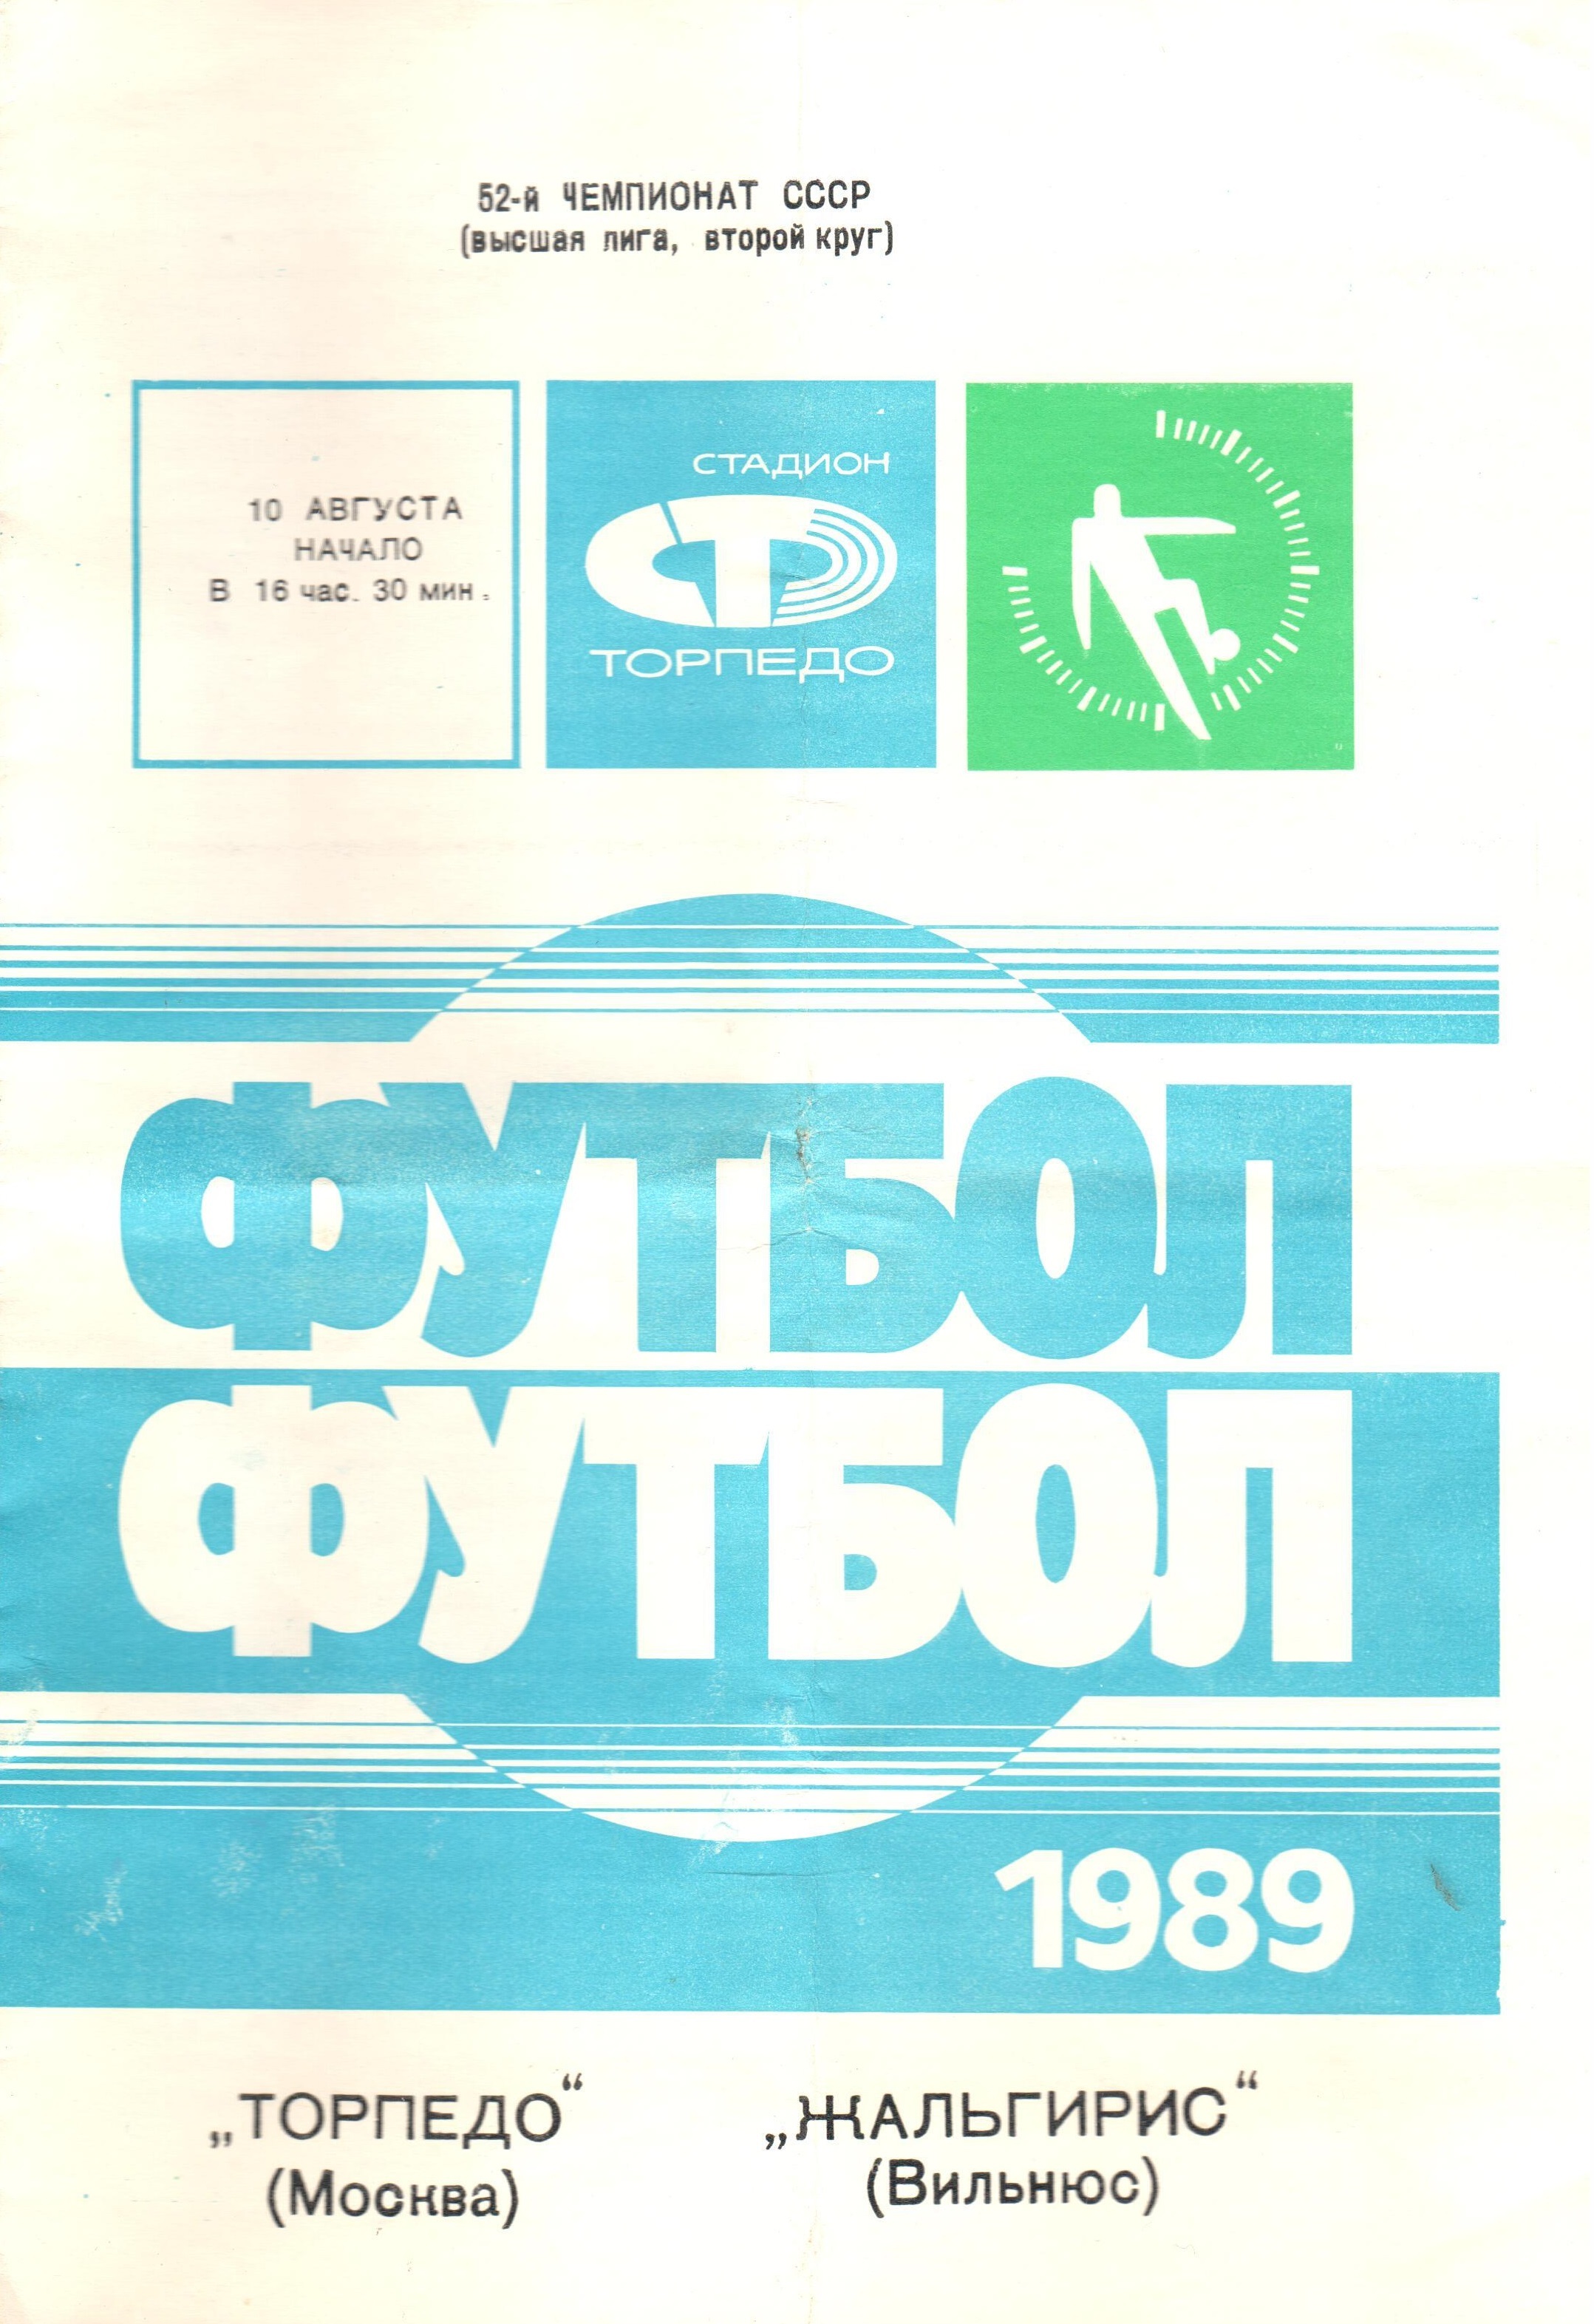 Программа торпедо. Программки Торпедо. Москва 1989. Книга по футболу Торпедо.